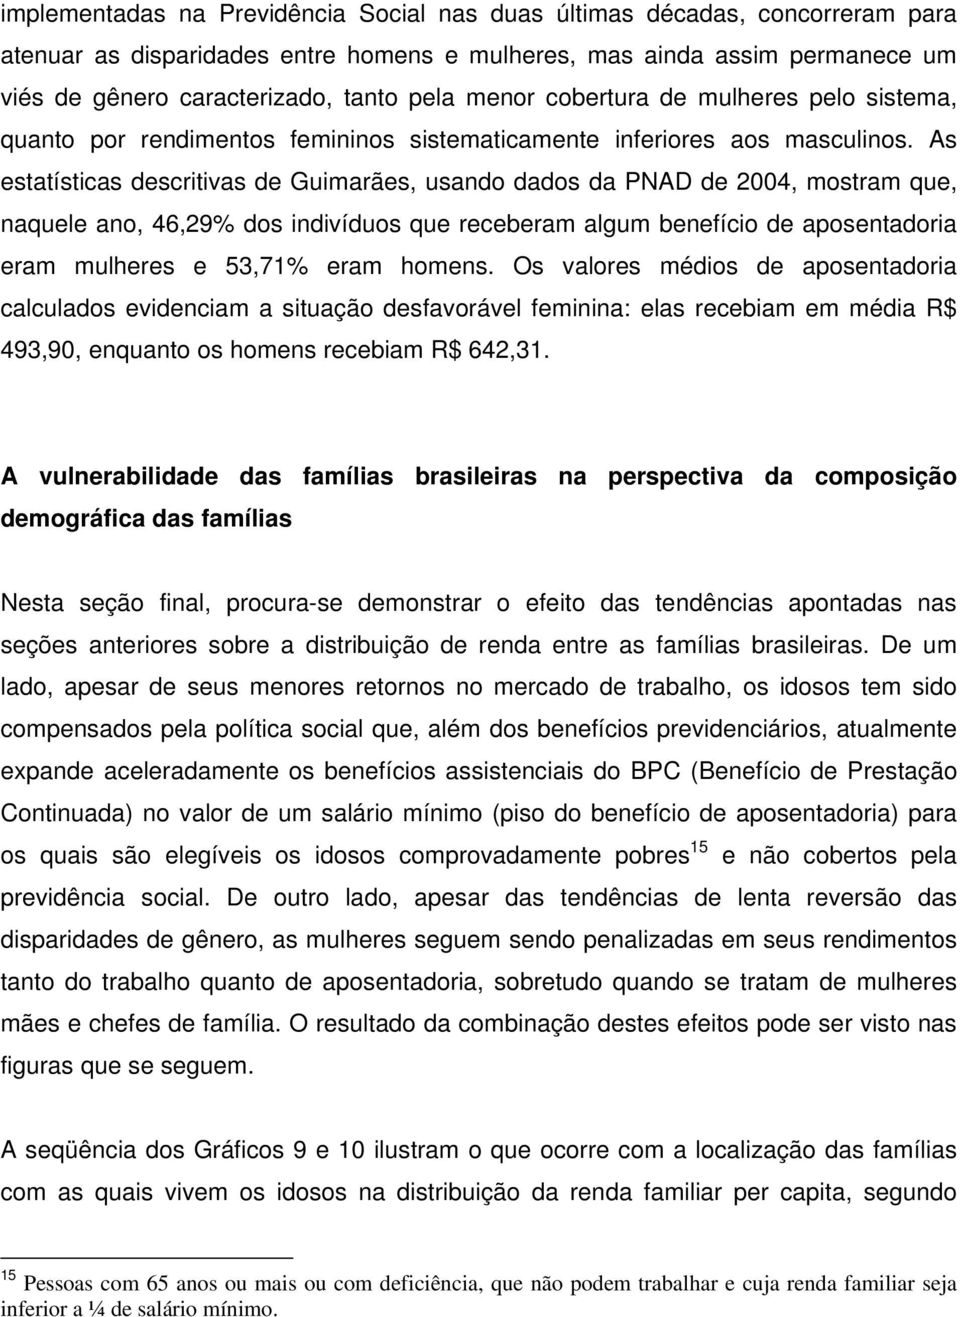 As estatísticas descritivas de Guimarães, usando dados da PNAD de 2004, mostram que, naquele ano, 46,29% dos indivíduos que receberam algum benefício de aposentadoria eram mulheres e 53,71% eram